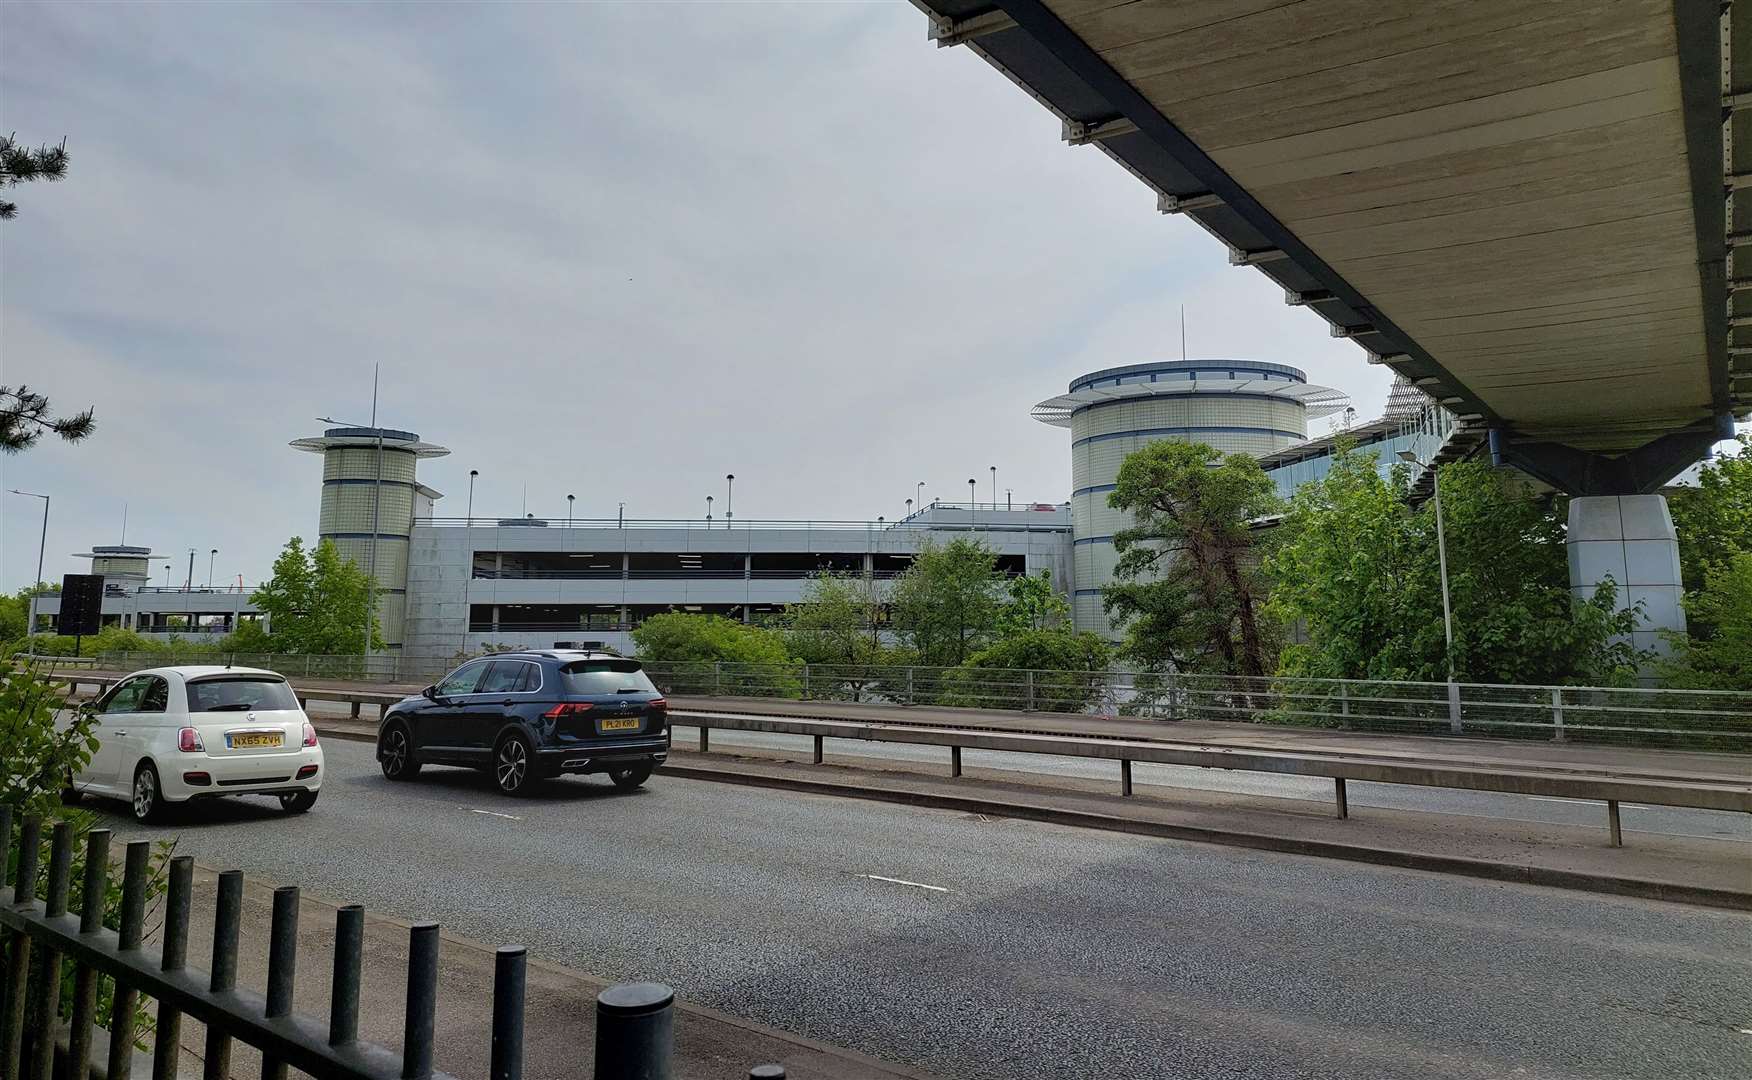 The multi-storey car park at Ashford International